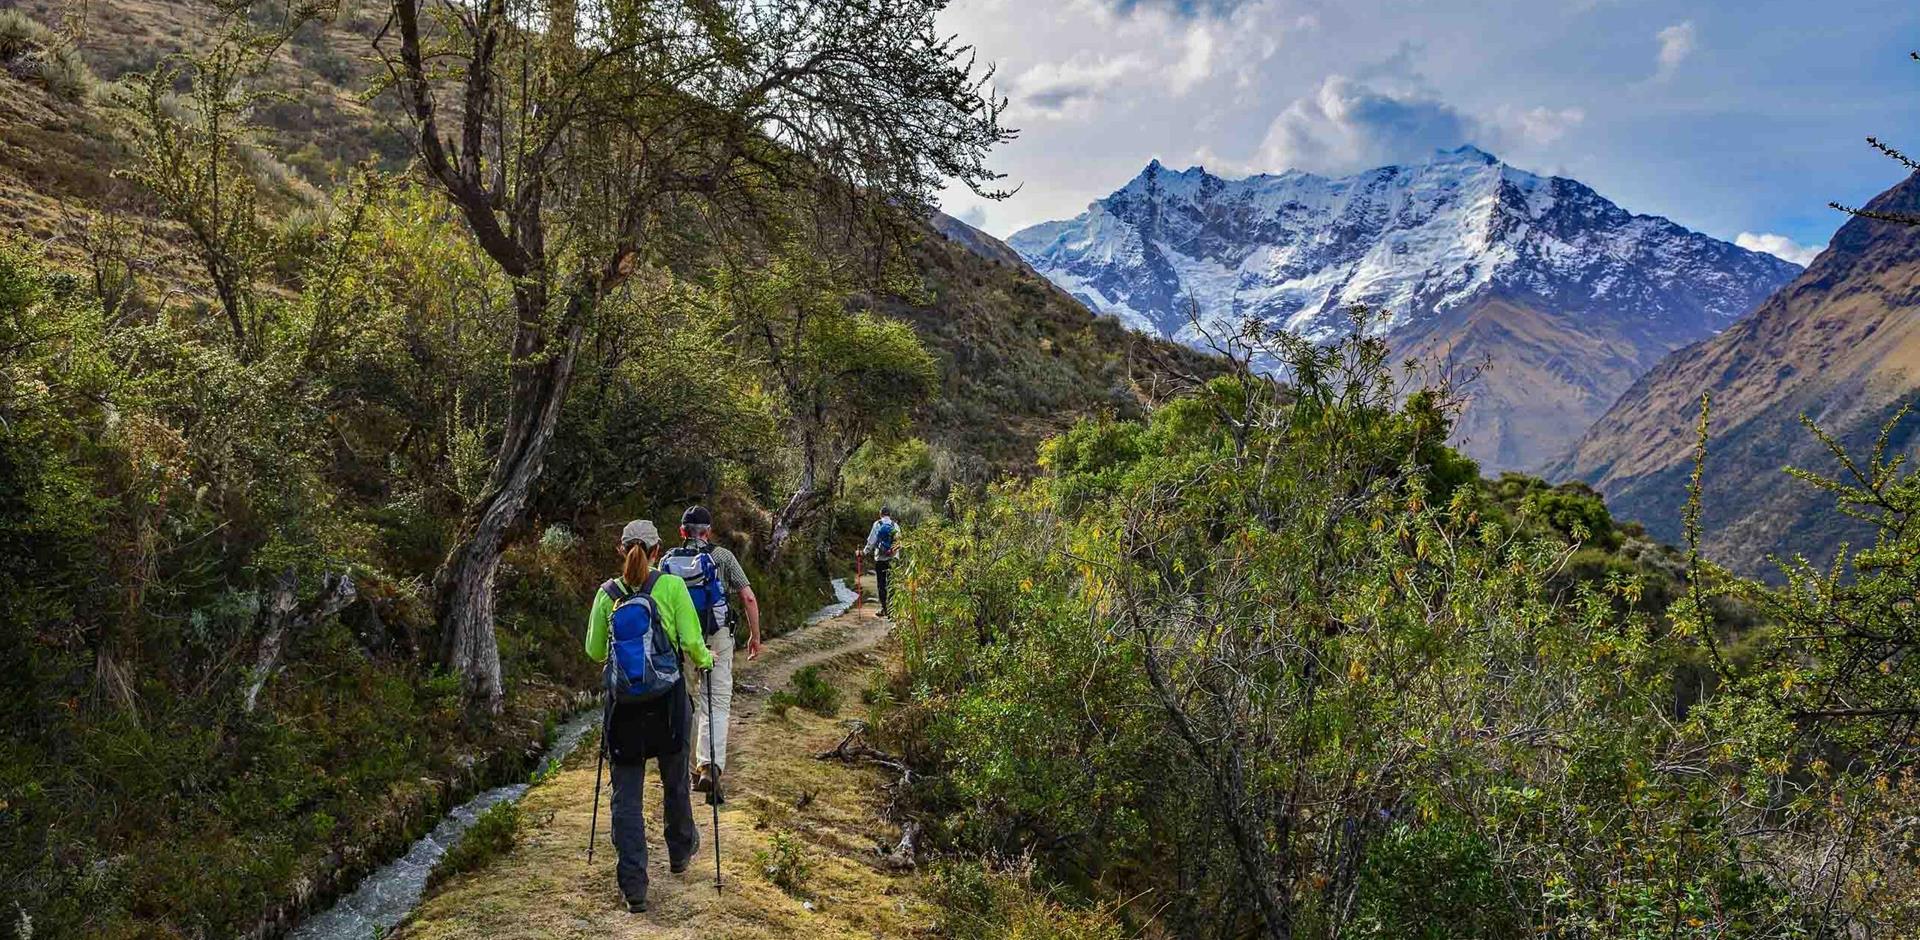 Discover Peru's alternative Inca trails | Abercrombie & Kent